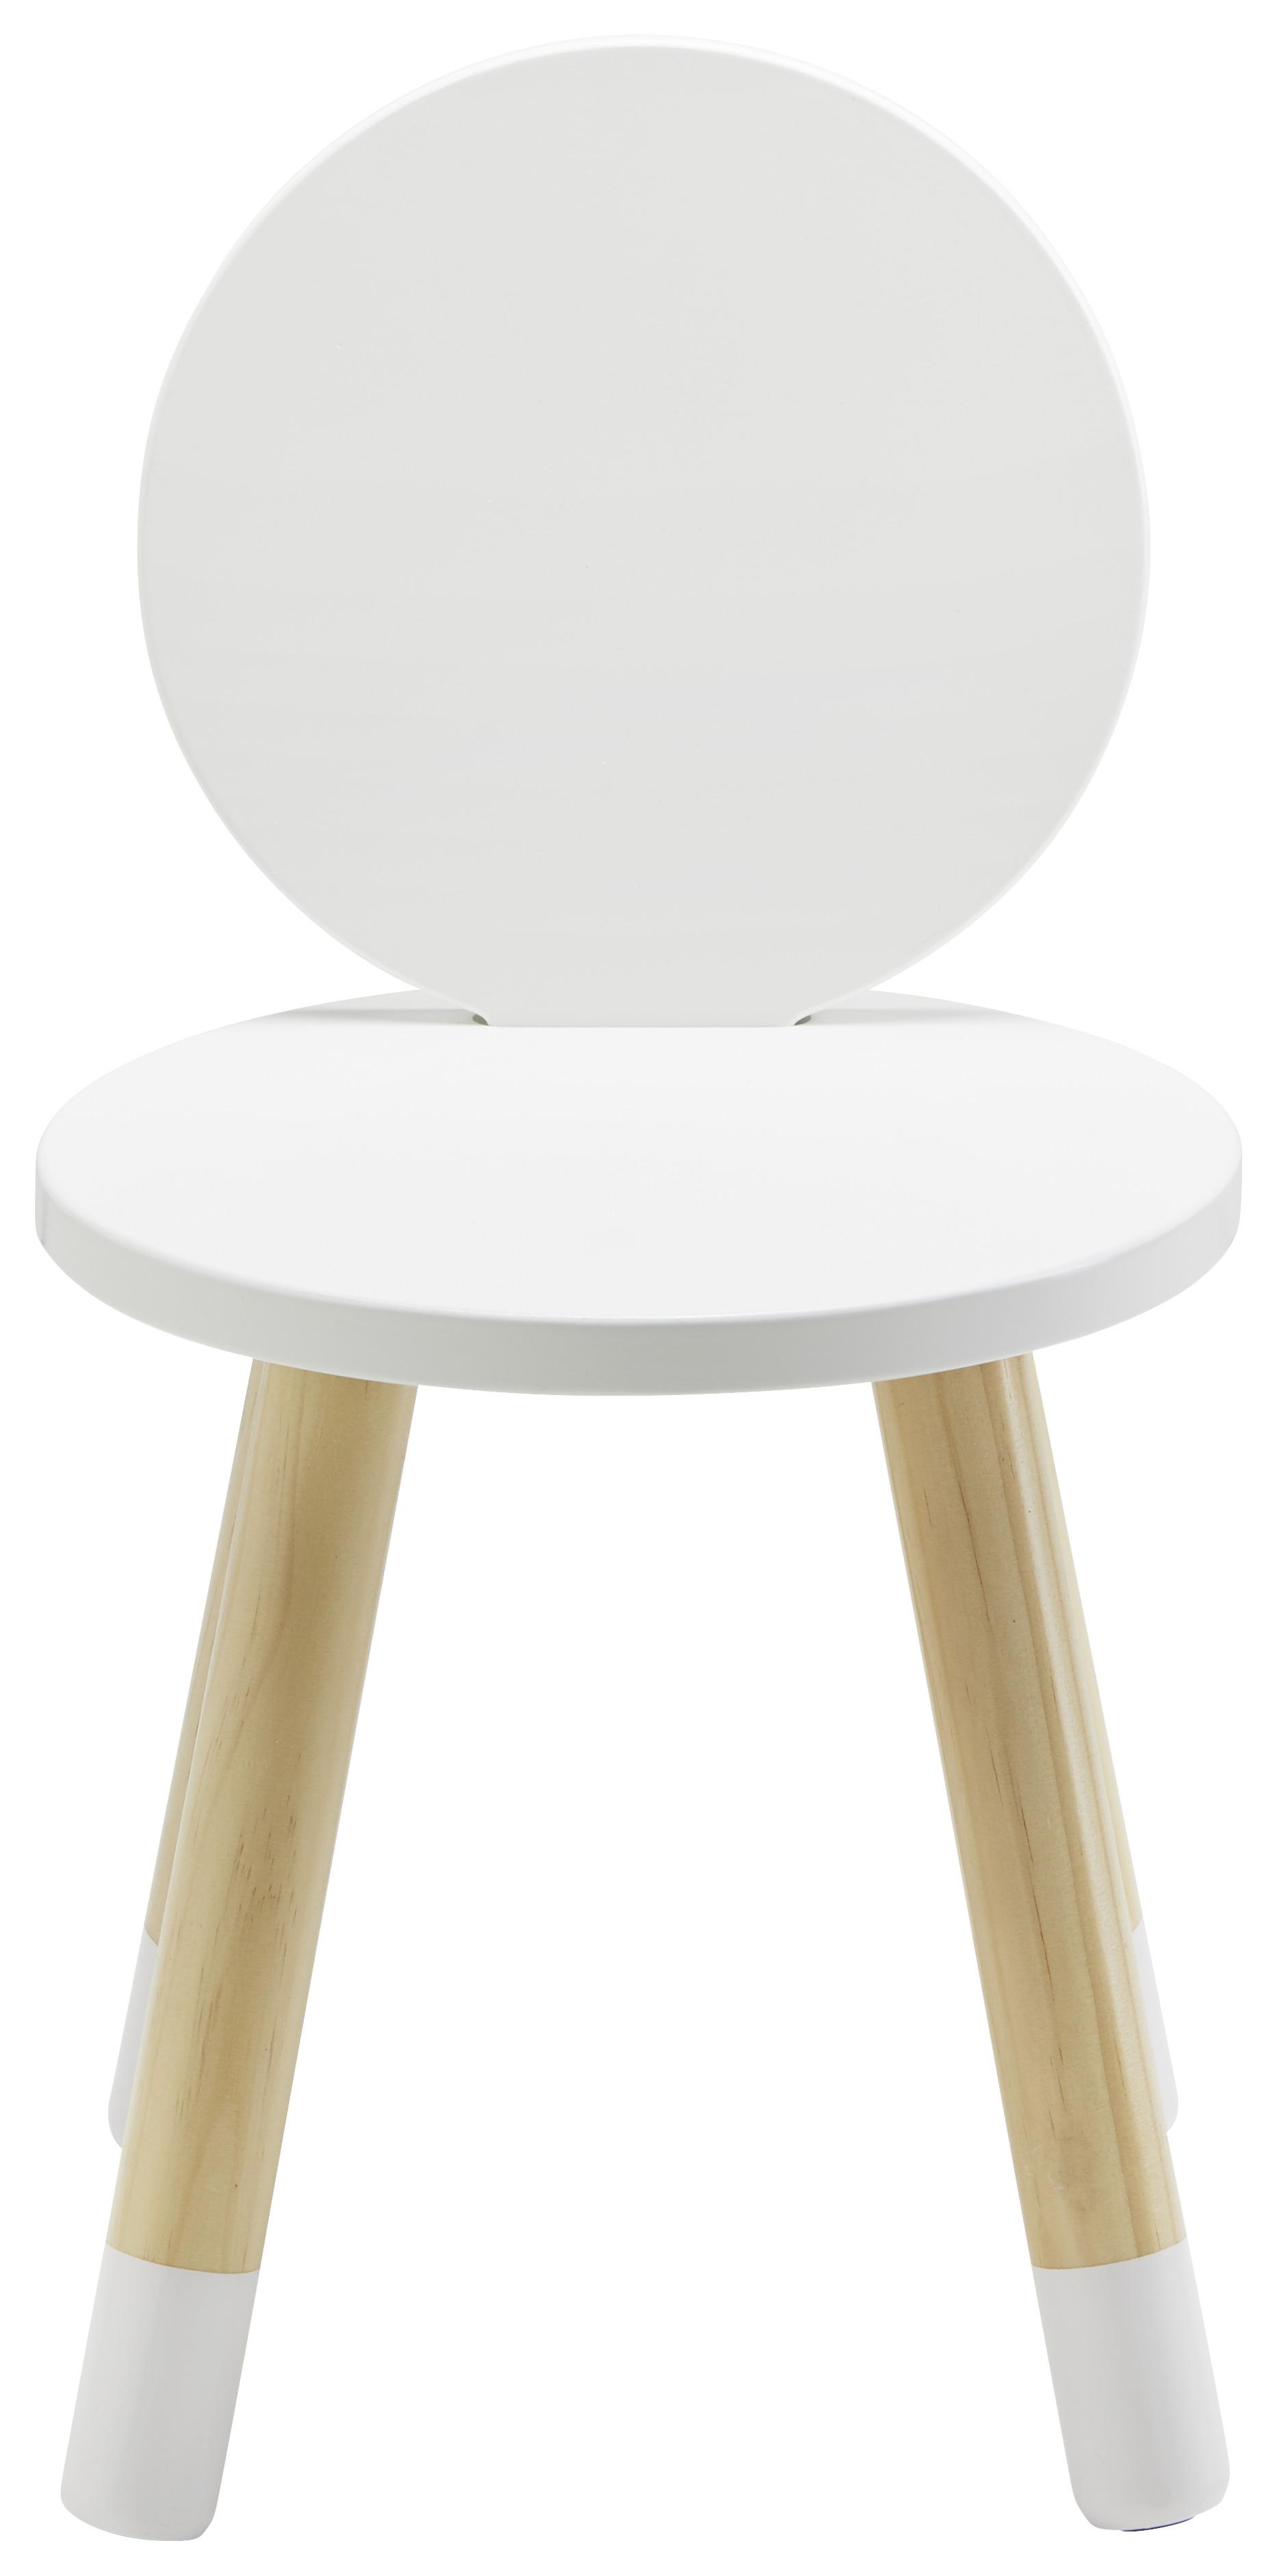 Dětská Židle Leni - bílá/barvy pinie, Moderní, dřevo (27,4/51cm) - Modern Living